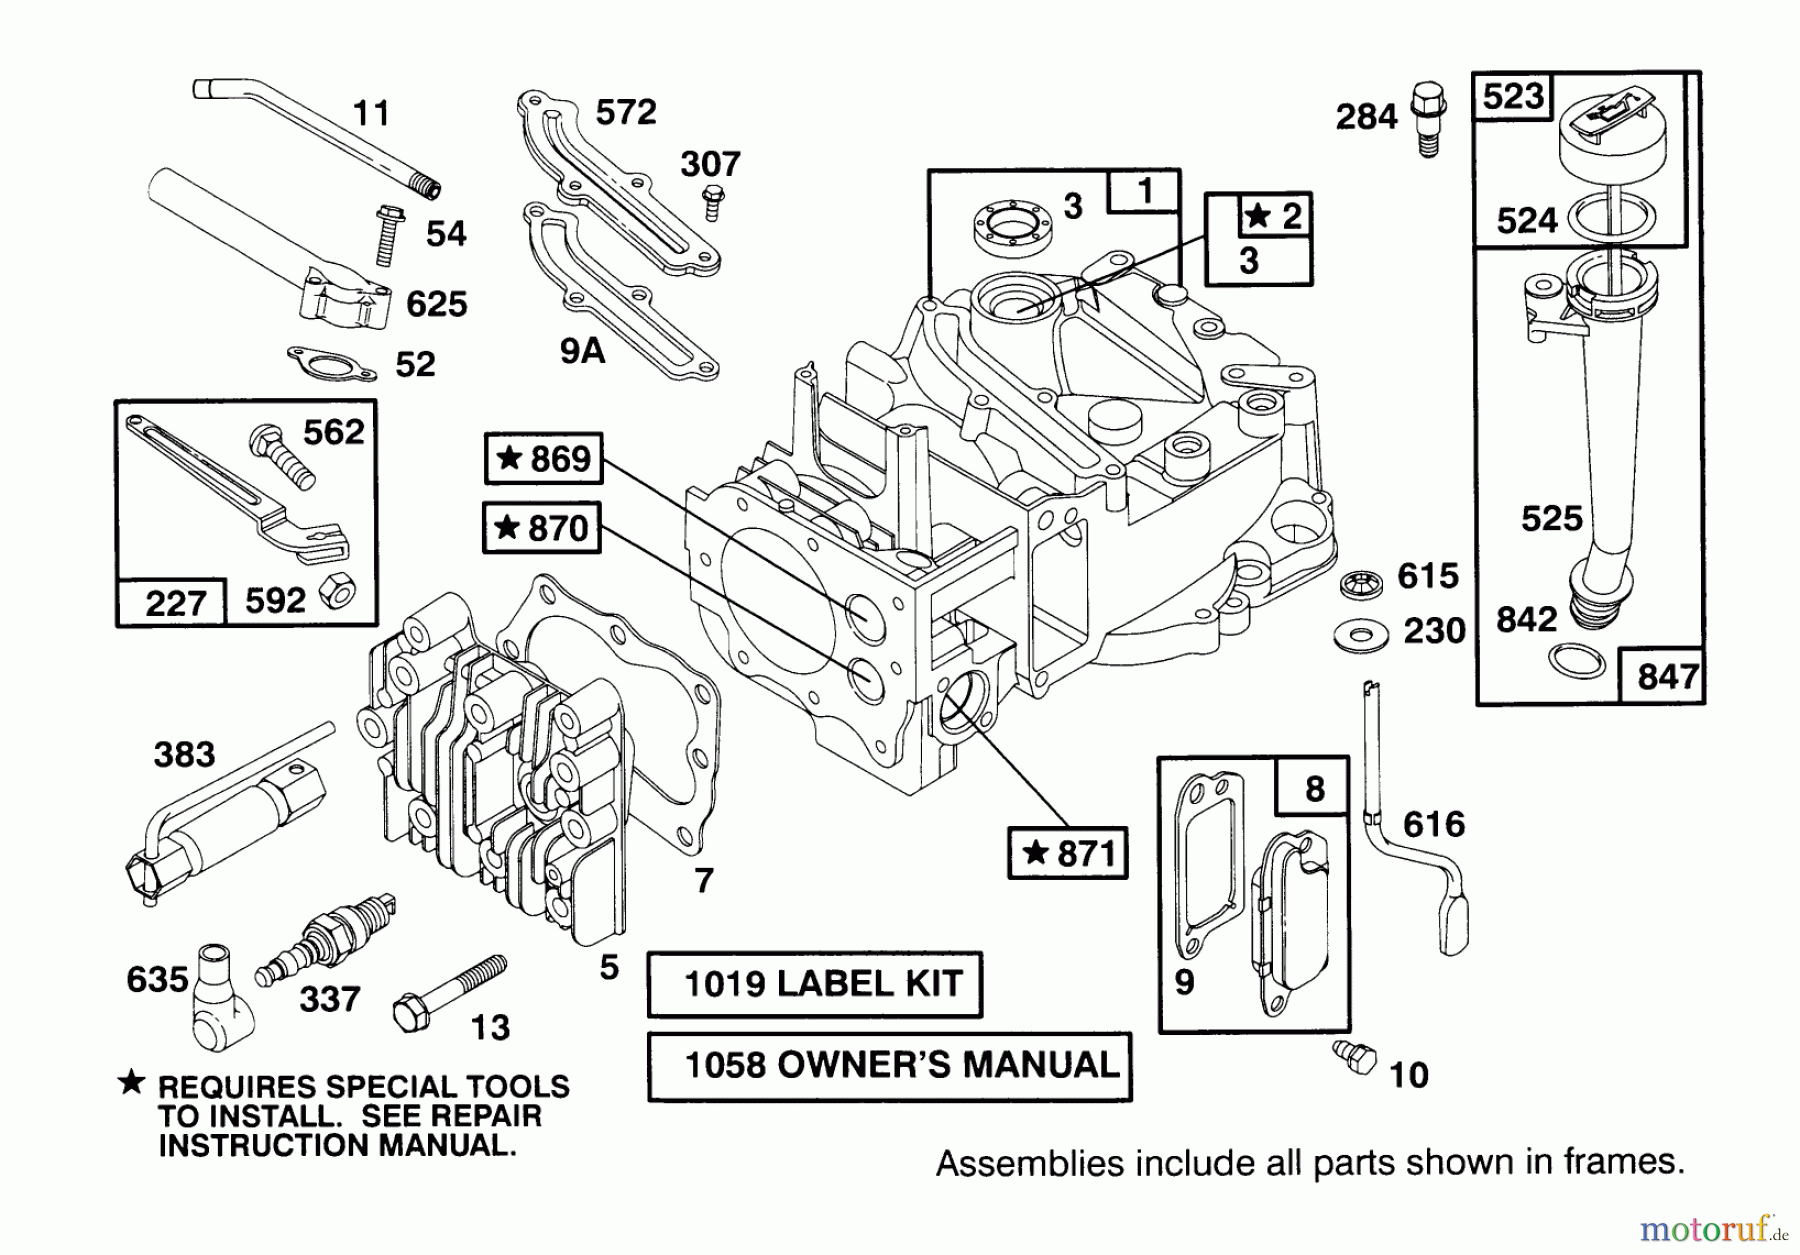  Toro Neu Mowers, Walk-Behind Seite 2 21010BC - Toro Lawnmower, 1995 (5900001-5999999) ENGINE BRIGGS & STRATTON MODEL 12E802-0620-01 #1